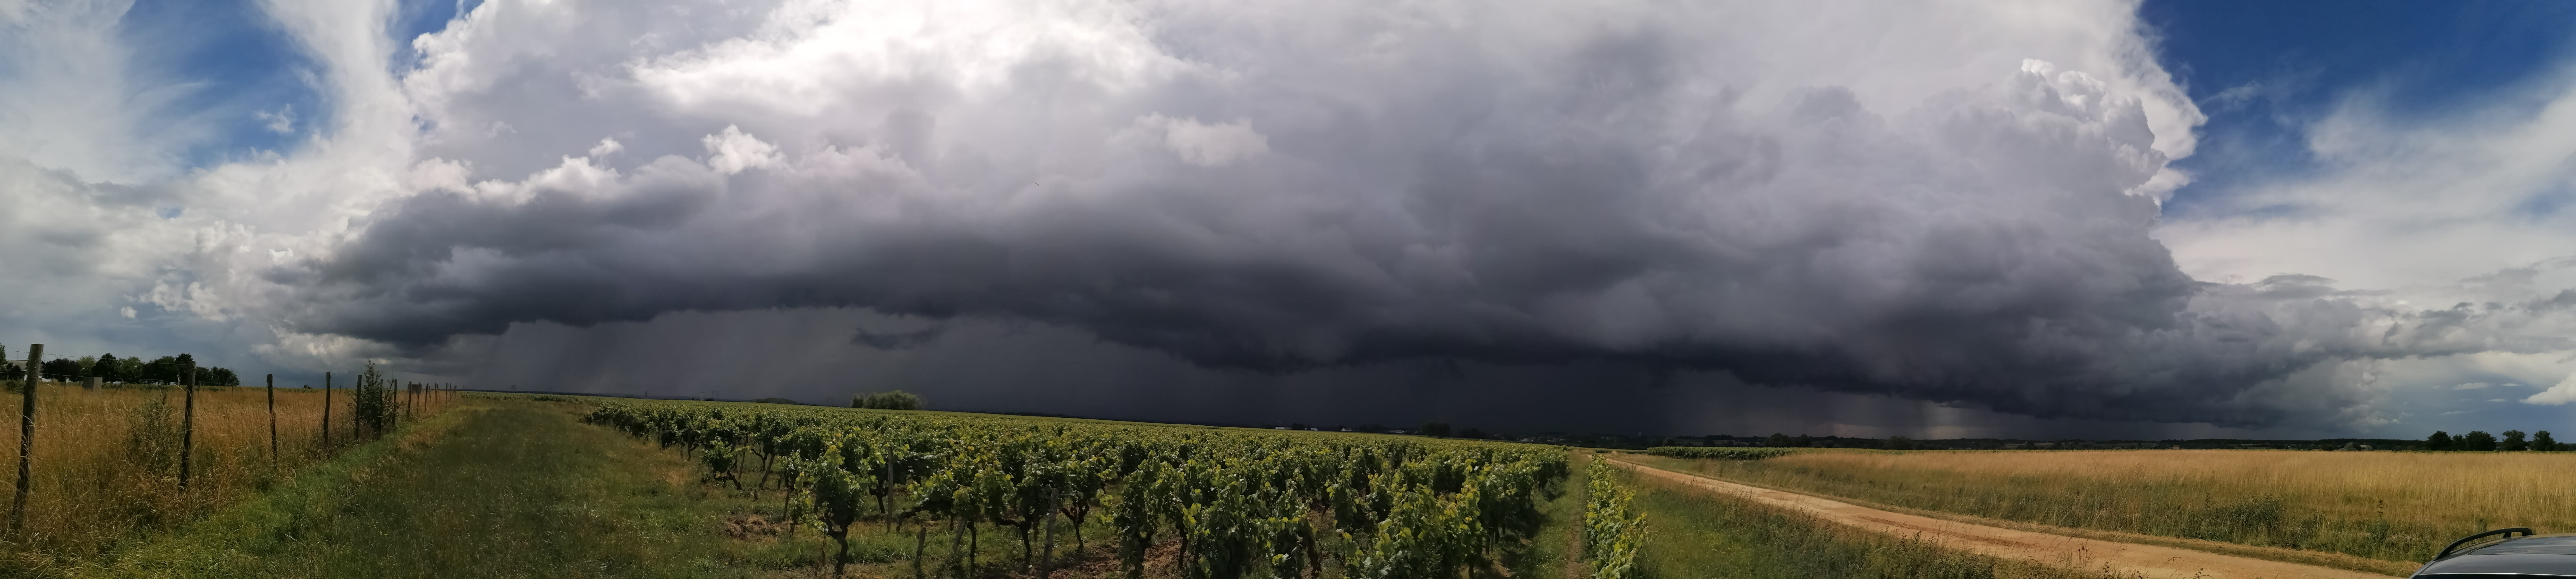 Vue panoramique des orages arrivant sur le sud du Maine-et-Loire le 16 juin 2020 vers 16h30. Photo prise depuis les vignes proches de Martigné-Briand (49) - 16/06/2020 16:30 - Jérôme Delacroix